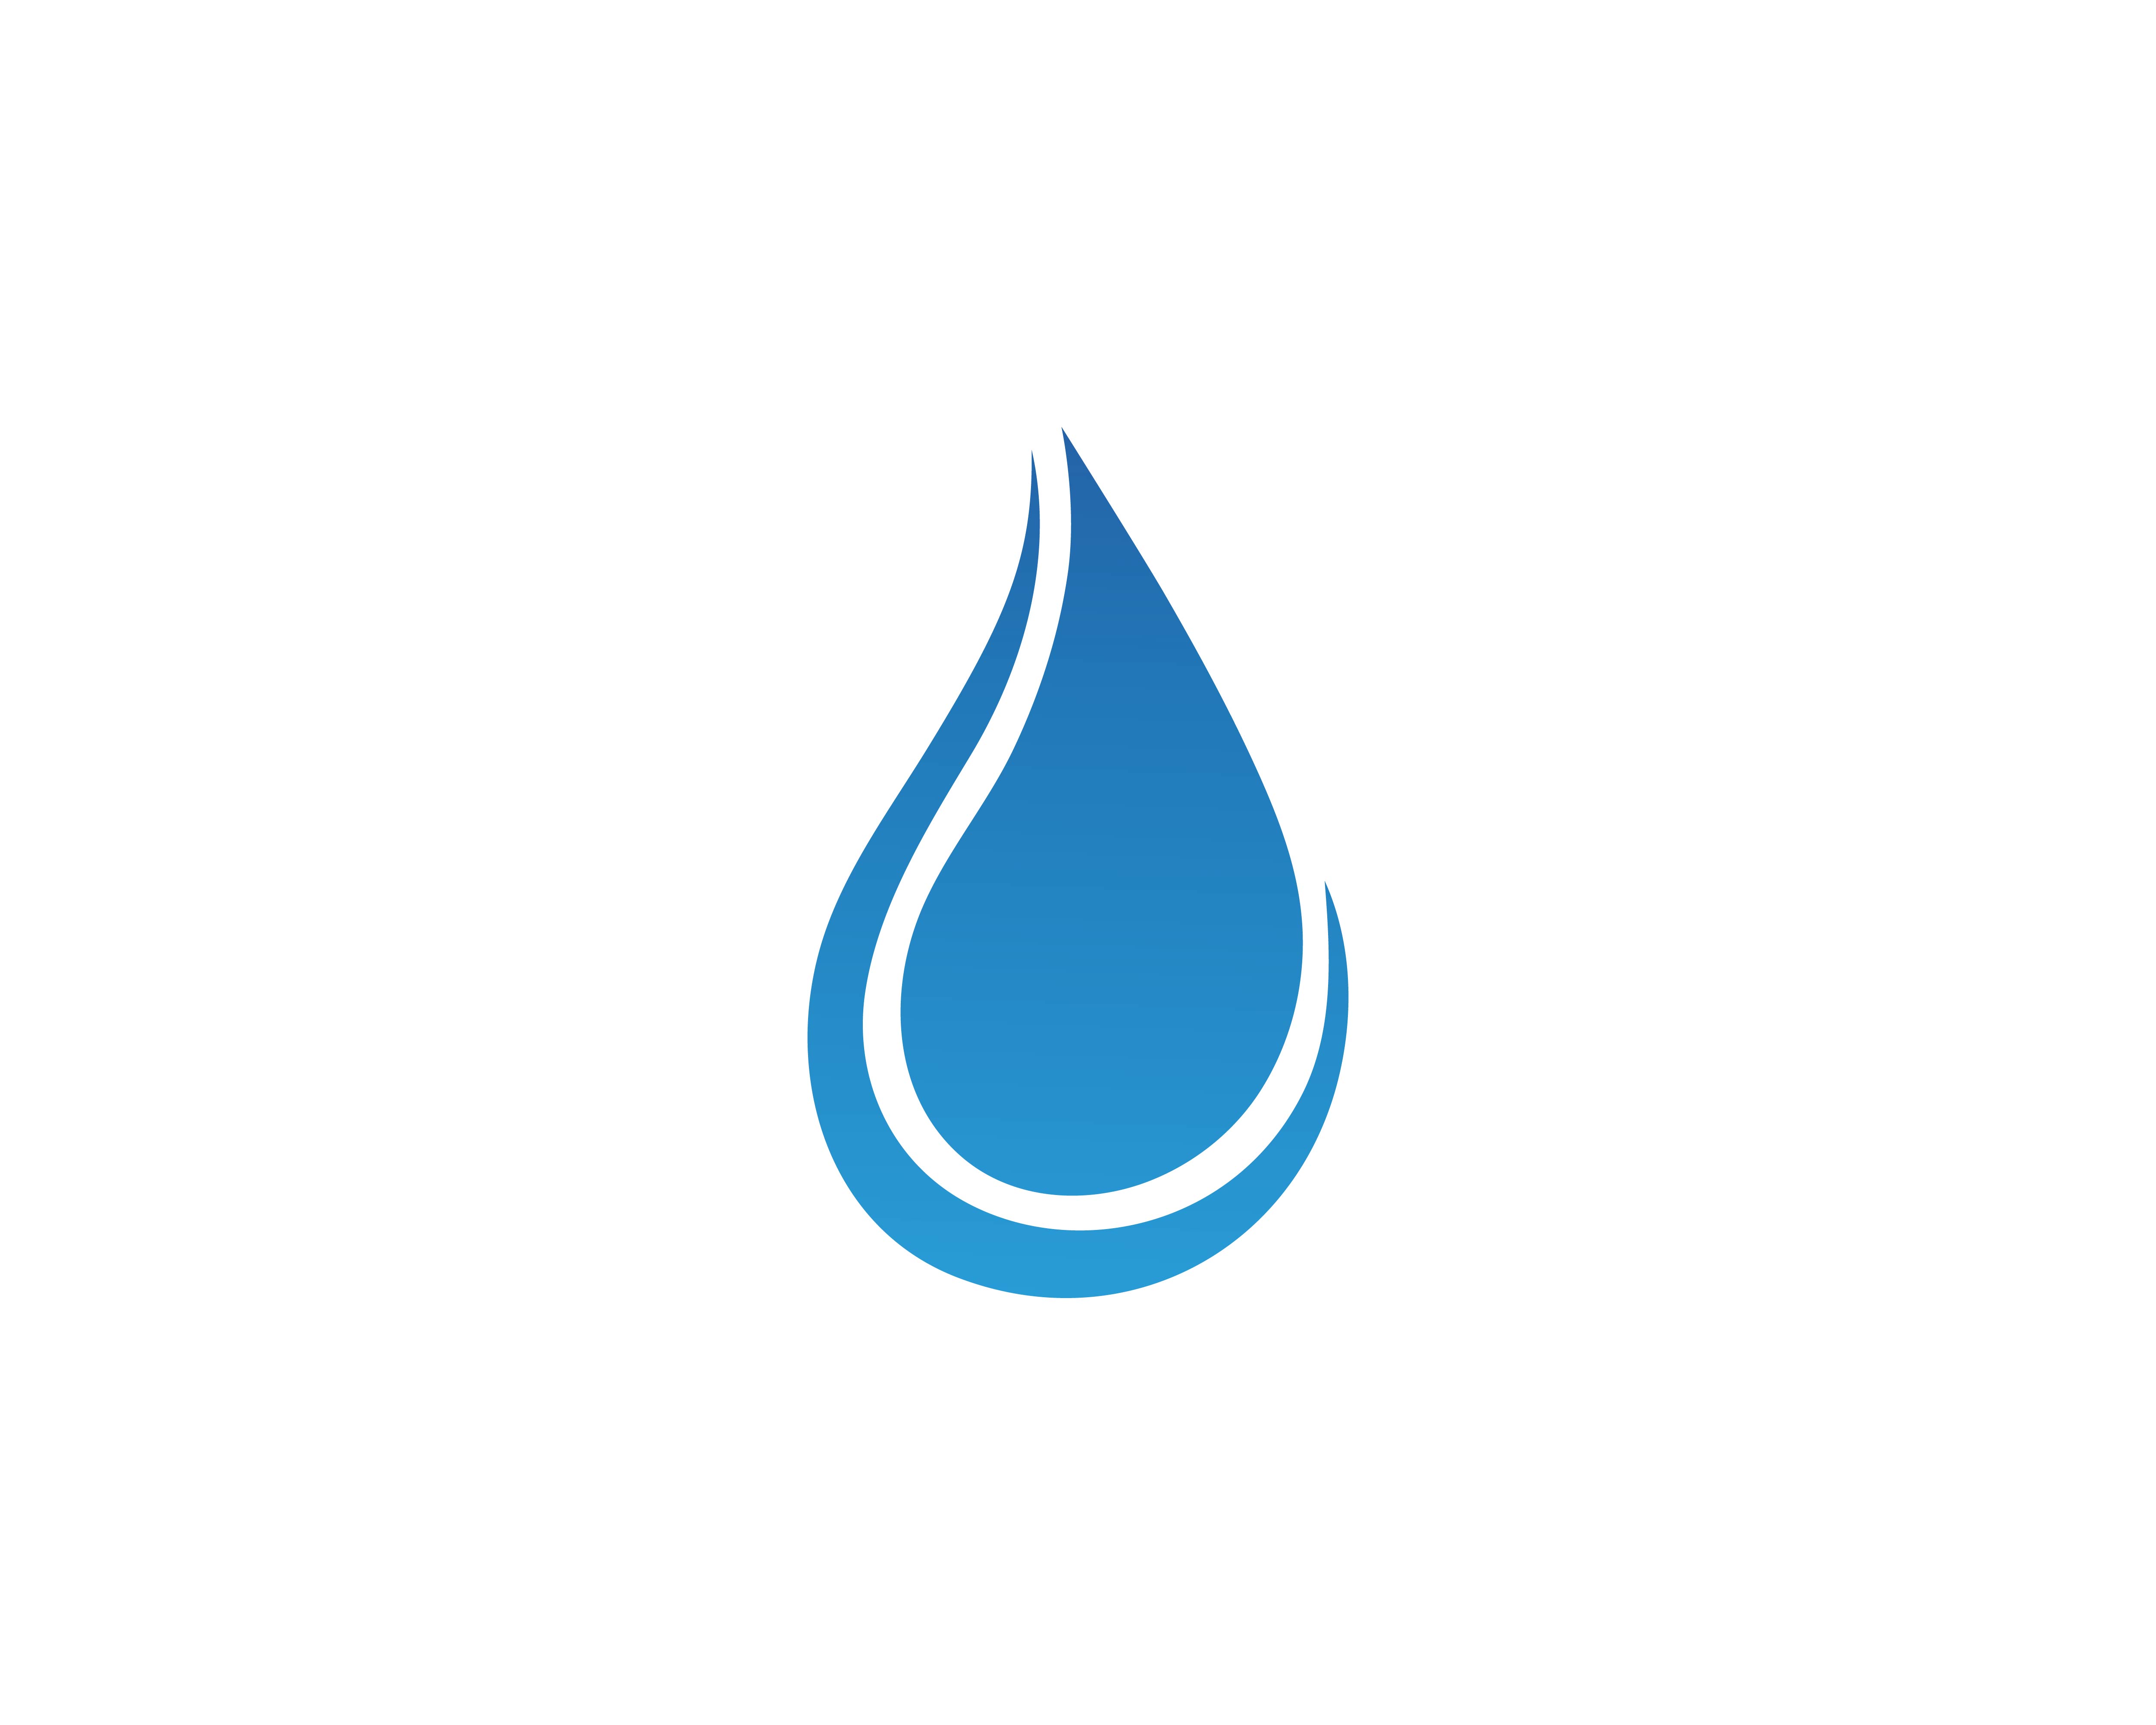 Water drop Logo Template vector 596895 Vector Art at Vecteezy